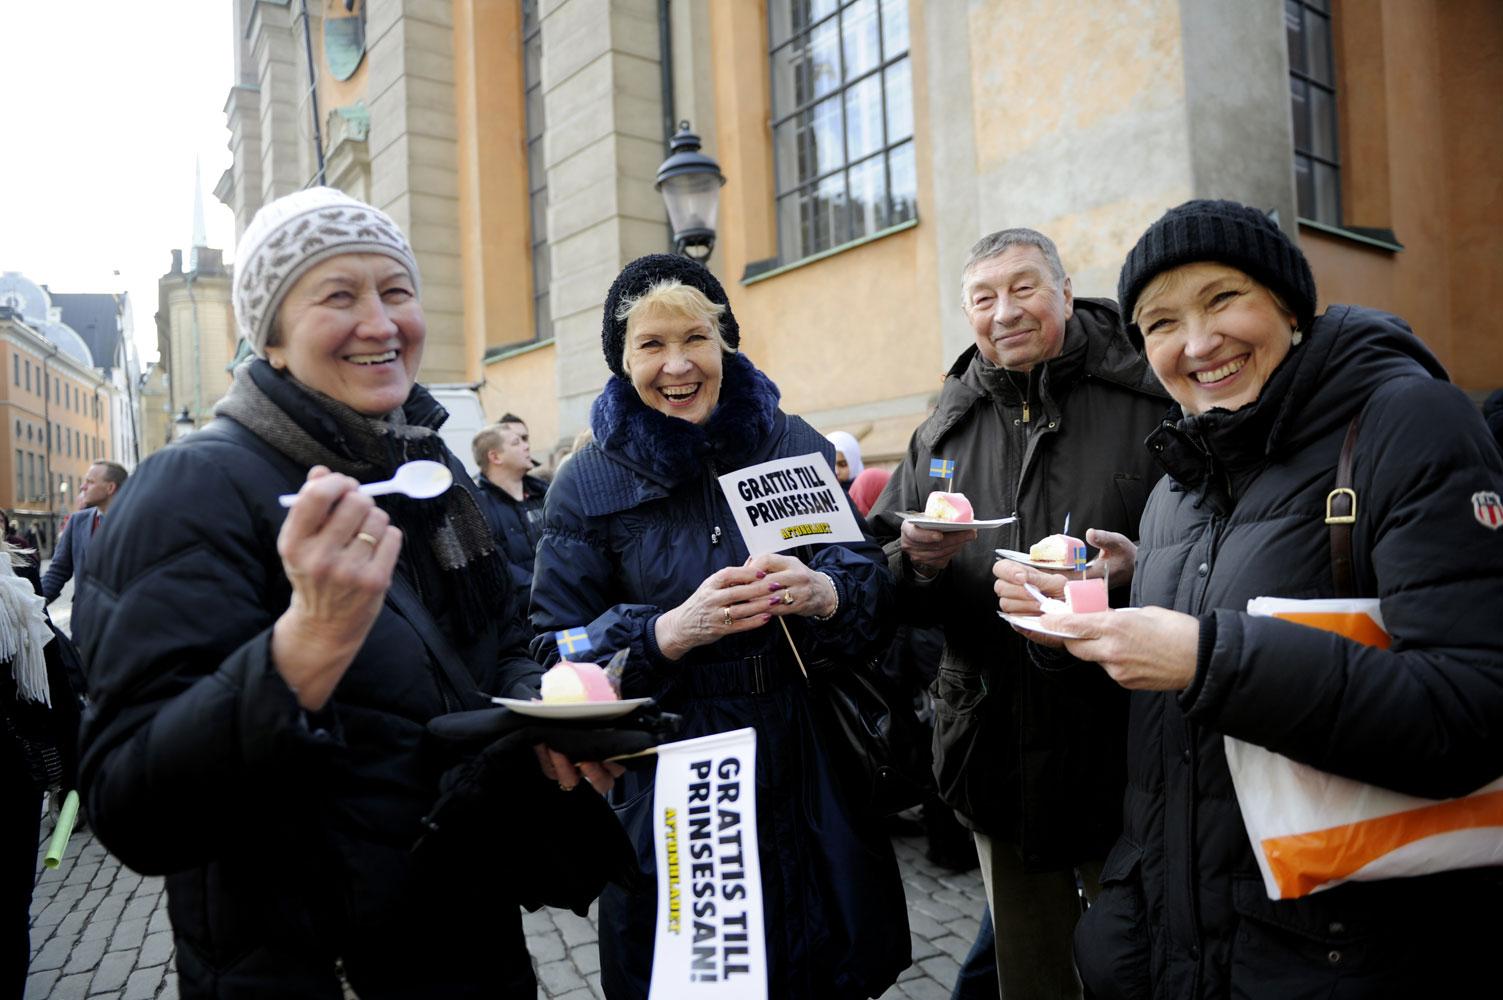 Reet Pärn, Ulli Lassmann, Tönu Lassman och Leelo Olm kom med en färja till Stockholm från Estland i morse. ”Vi firar prinsessan och att det i dag är Estlands frihetsdag”, säger Leelo Olm.